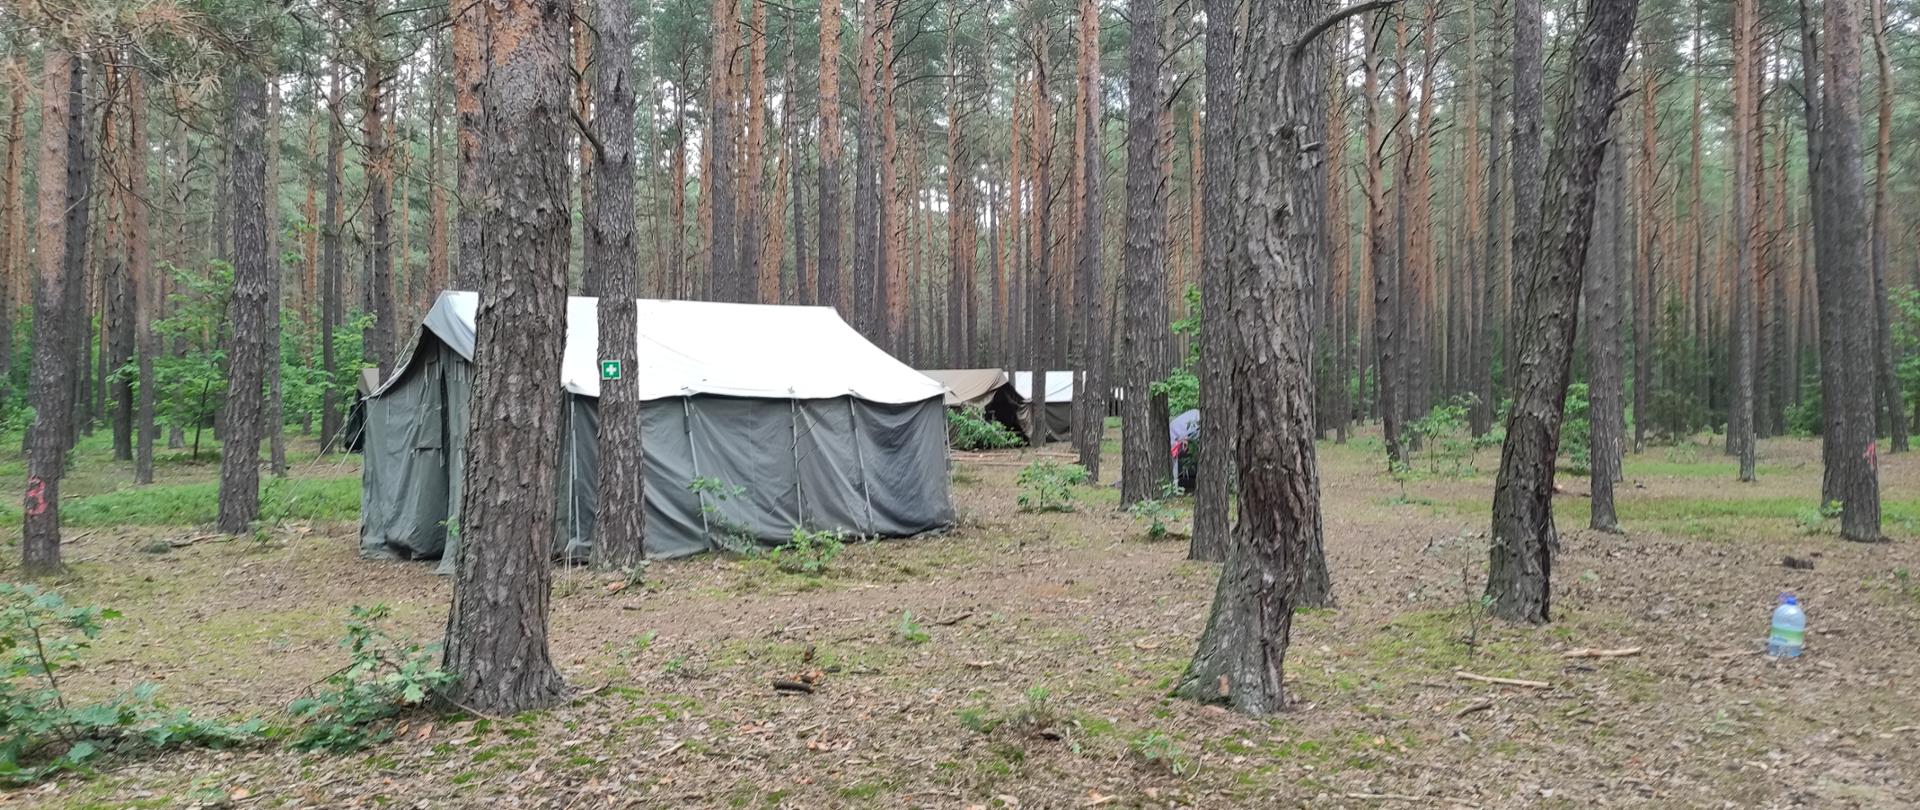 Na zdjęciu przedstawiono namiot harcerski ustawiony w sosnowym lesie. W głębi lasu widać dwa kolejne namioty.